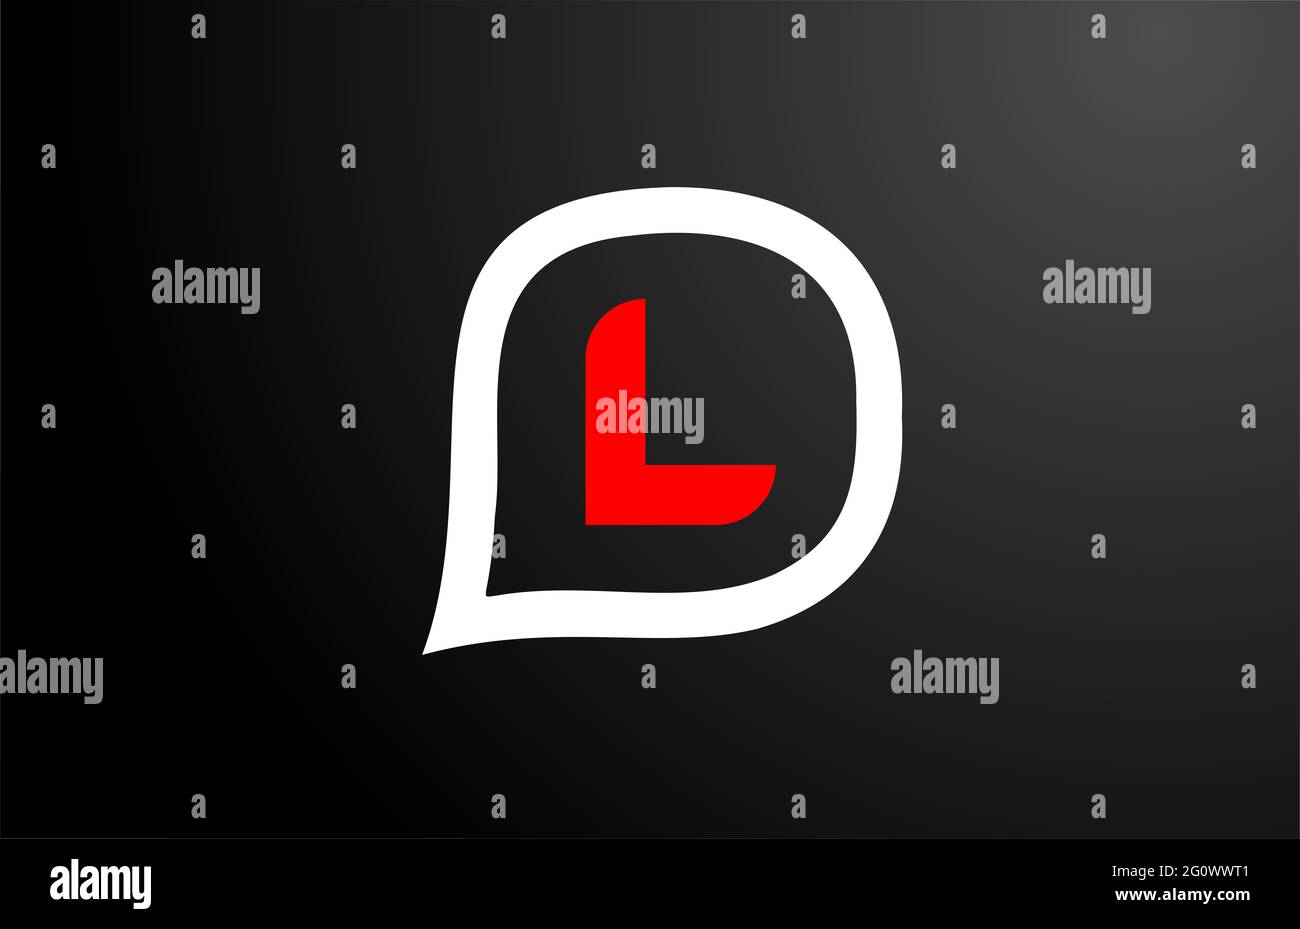 L lettera con nuvola rossa. Logo alfabeto. Icona di branding per prodotti e società Foto Stock